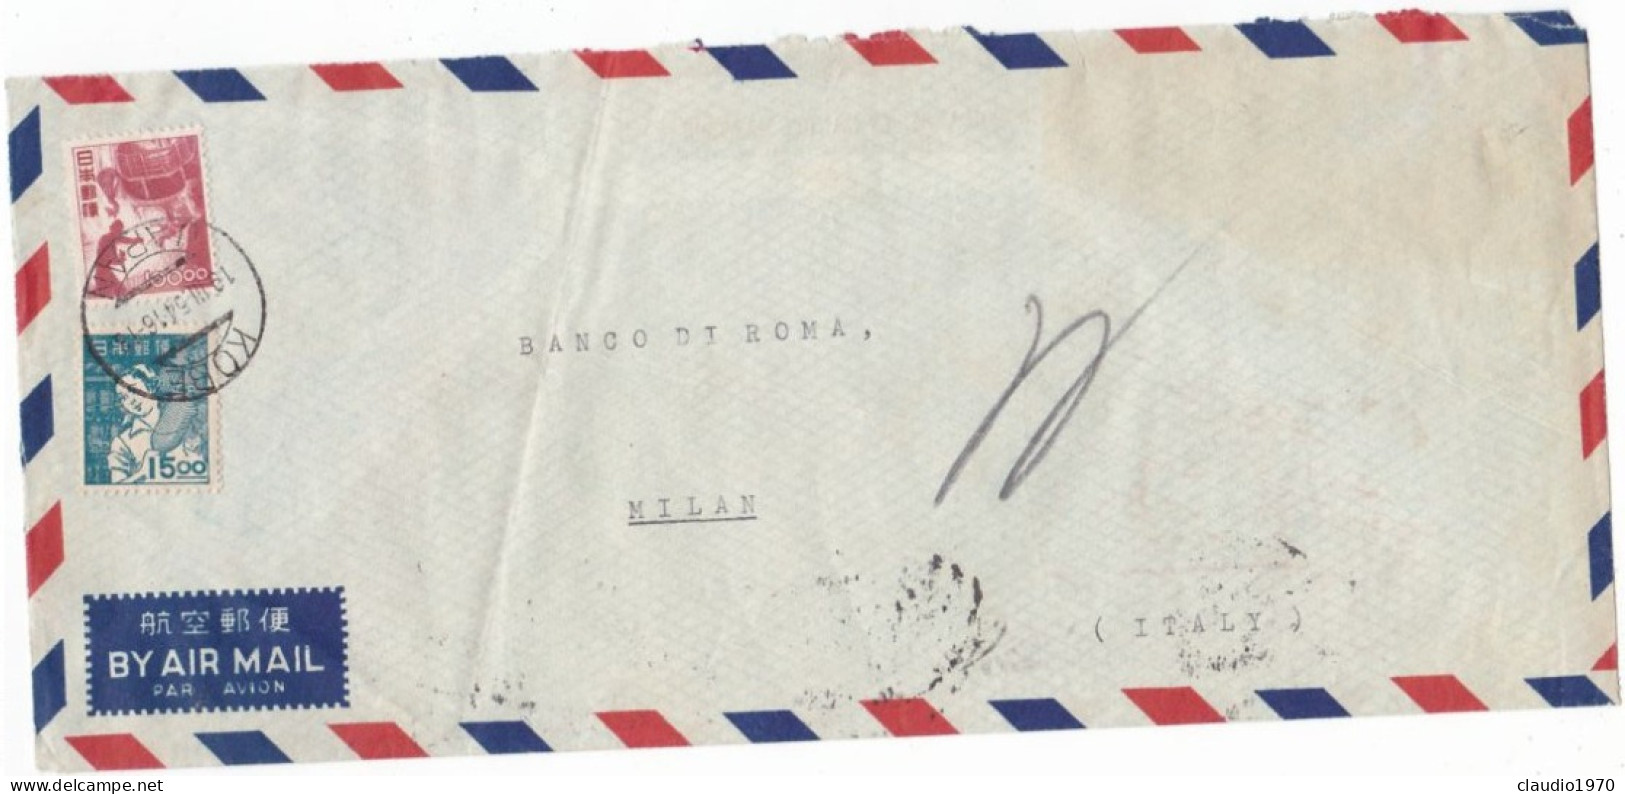 GIAPPONE - BUSTA VIA AEREA   - VIAGGIATA PER MILAN ITALY - BANCO DI ROMA - 1954 - Briefe U. Dokumente